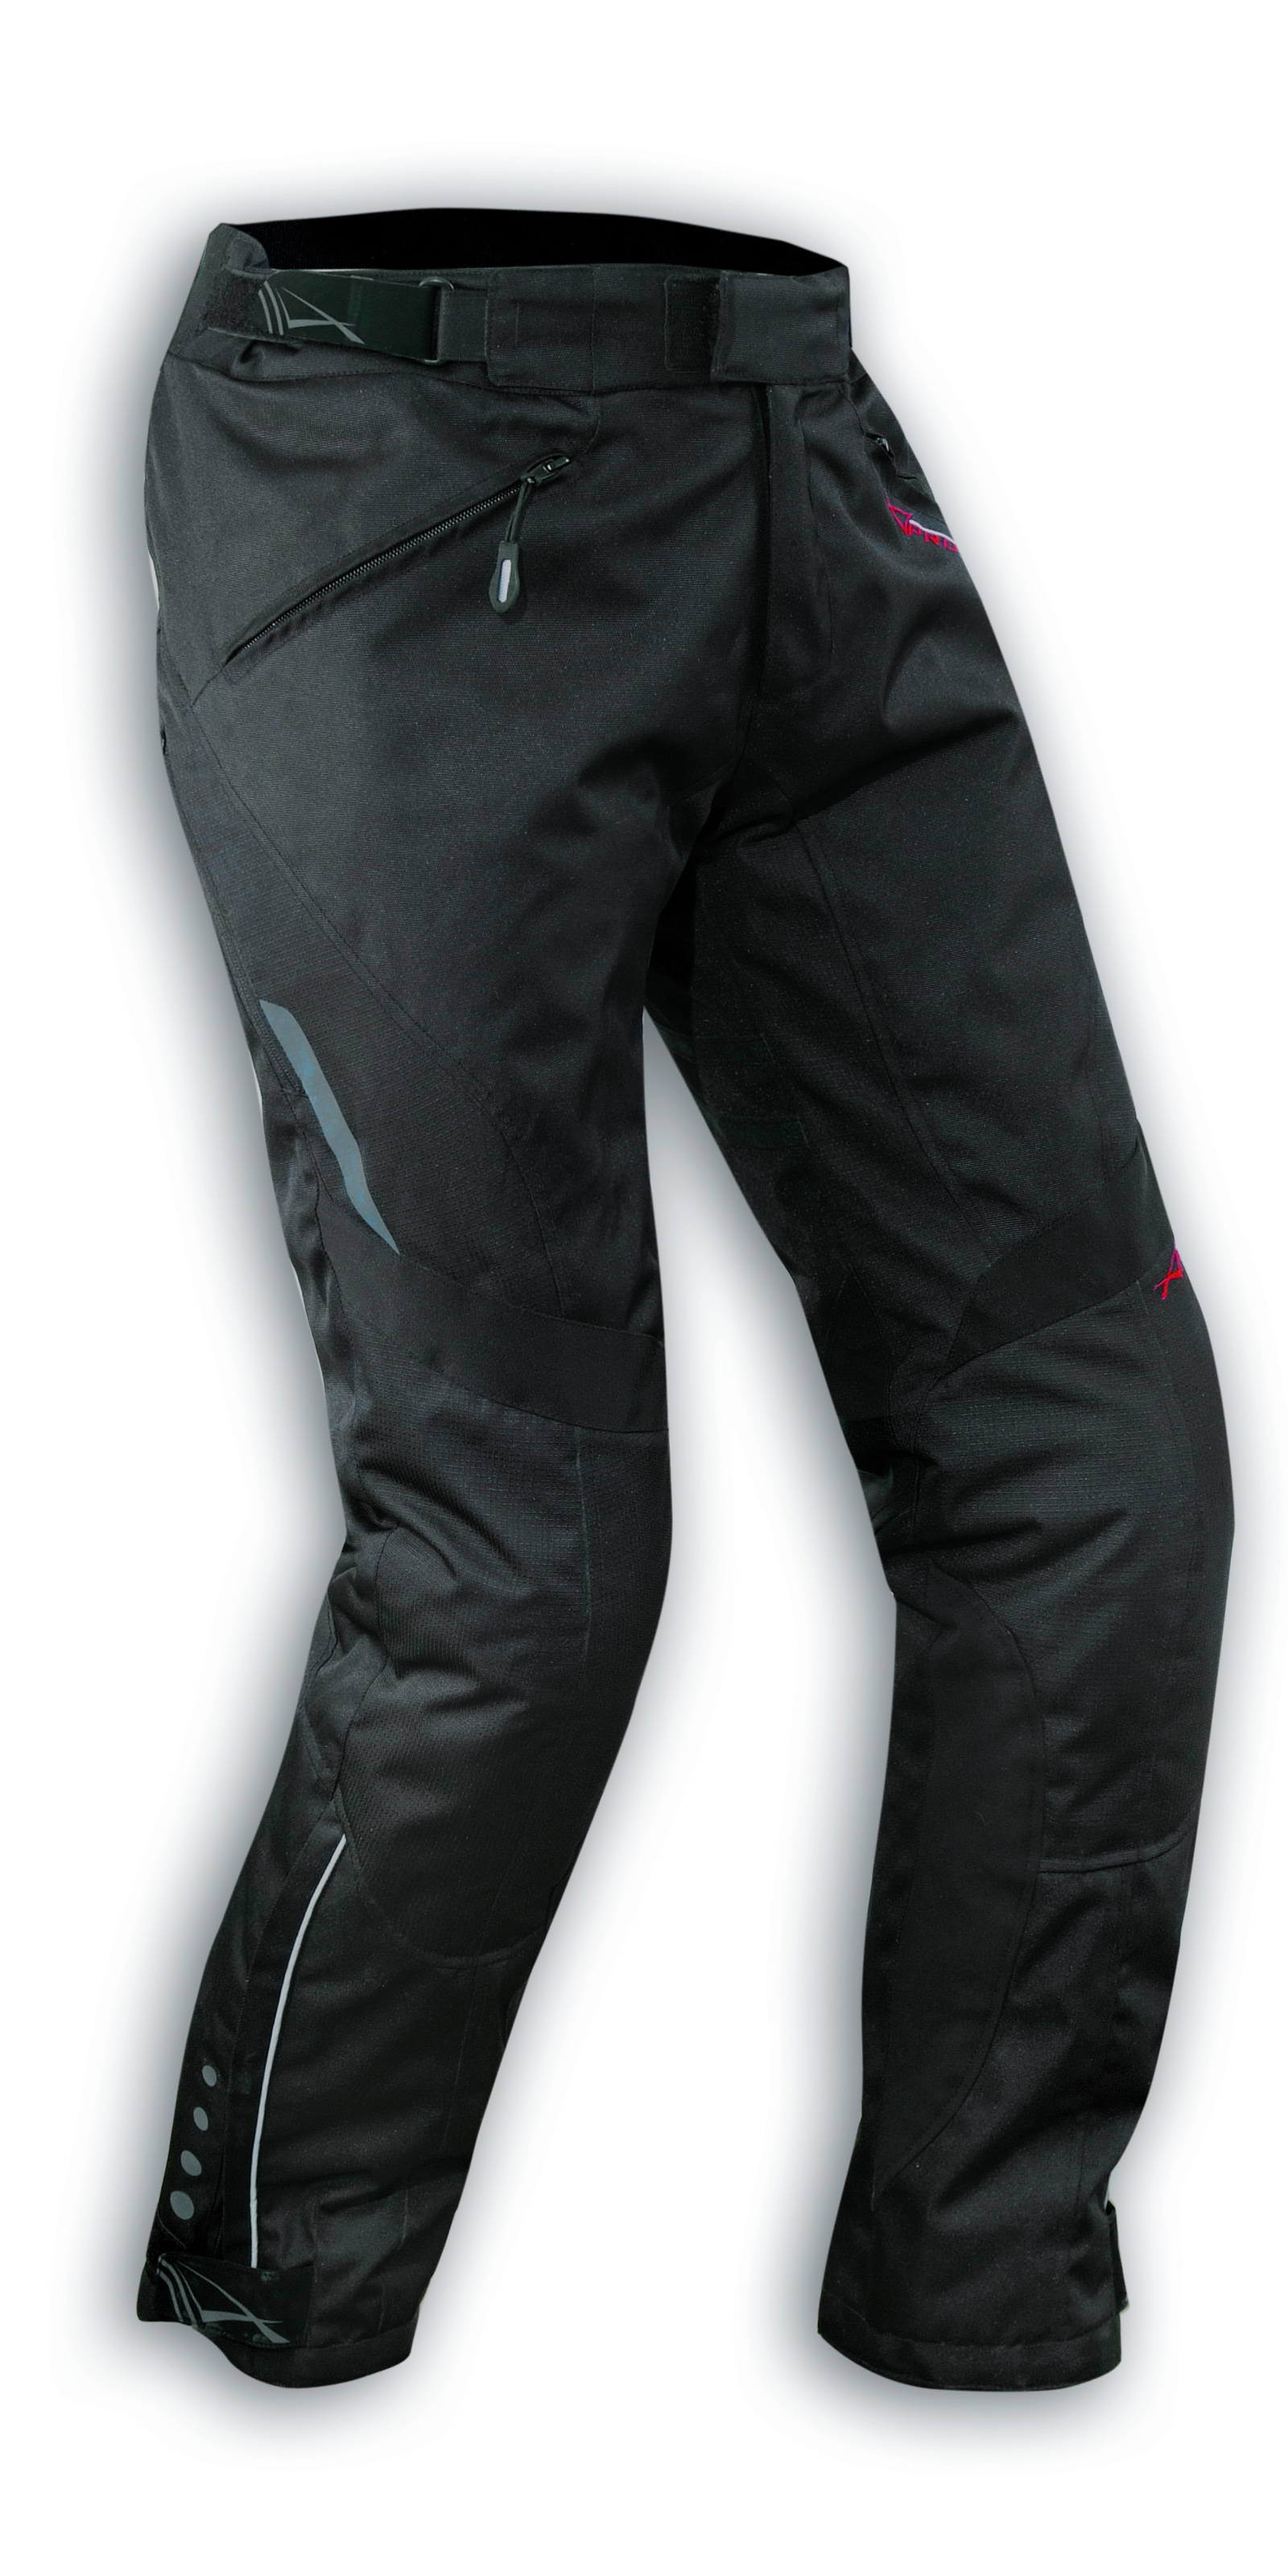 Abbigliamento Moto e Accessori - Pantaloni Donna Lady Impermeabile Moto  Imbottitura Termica Estraibile Nero